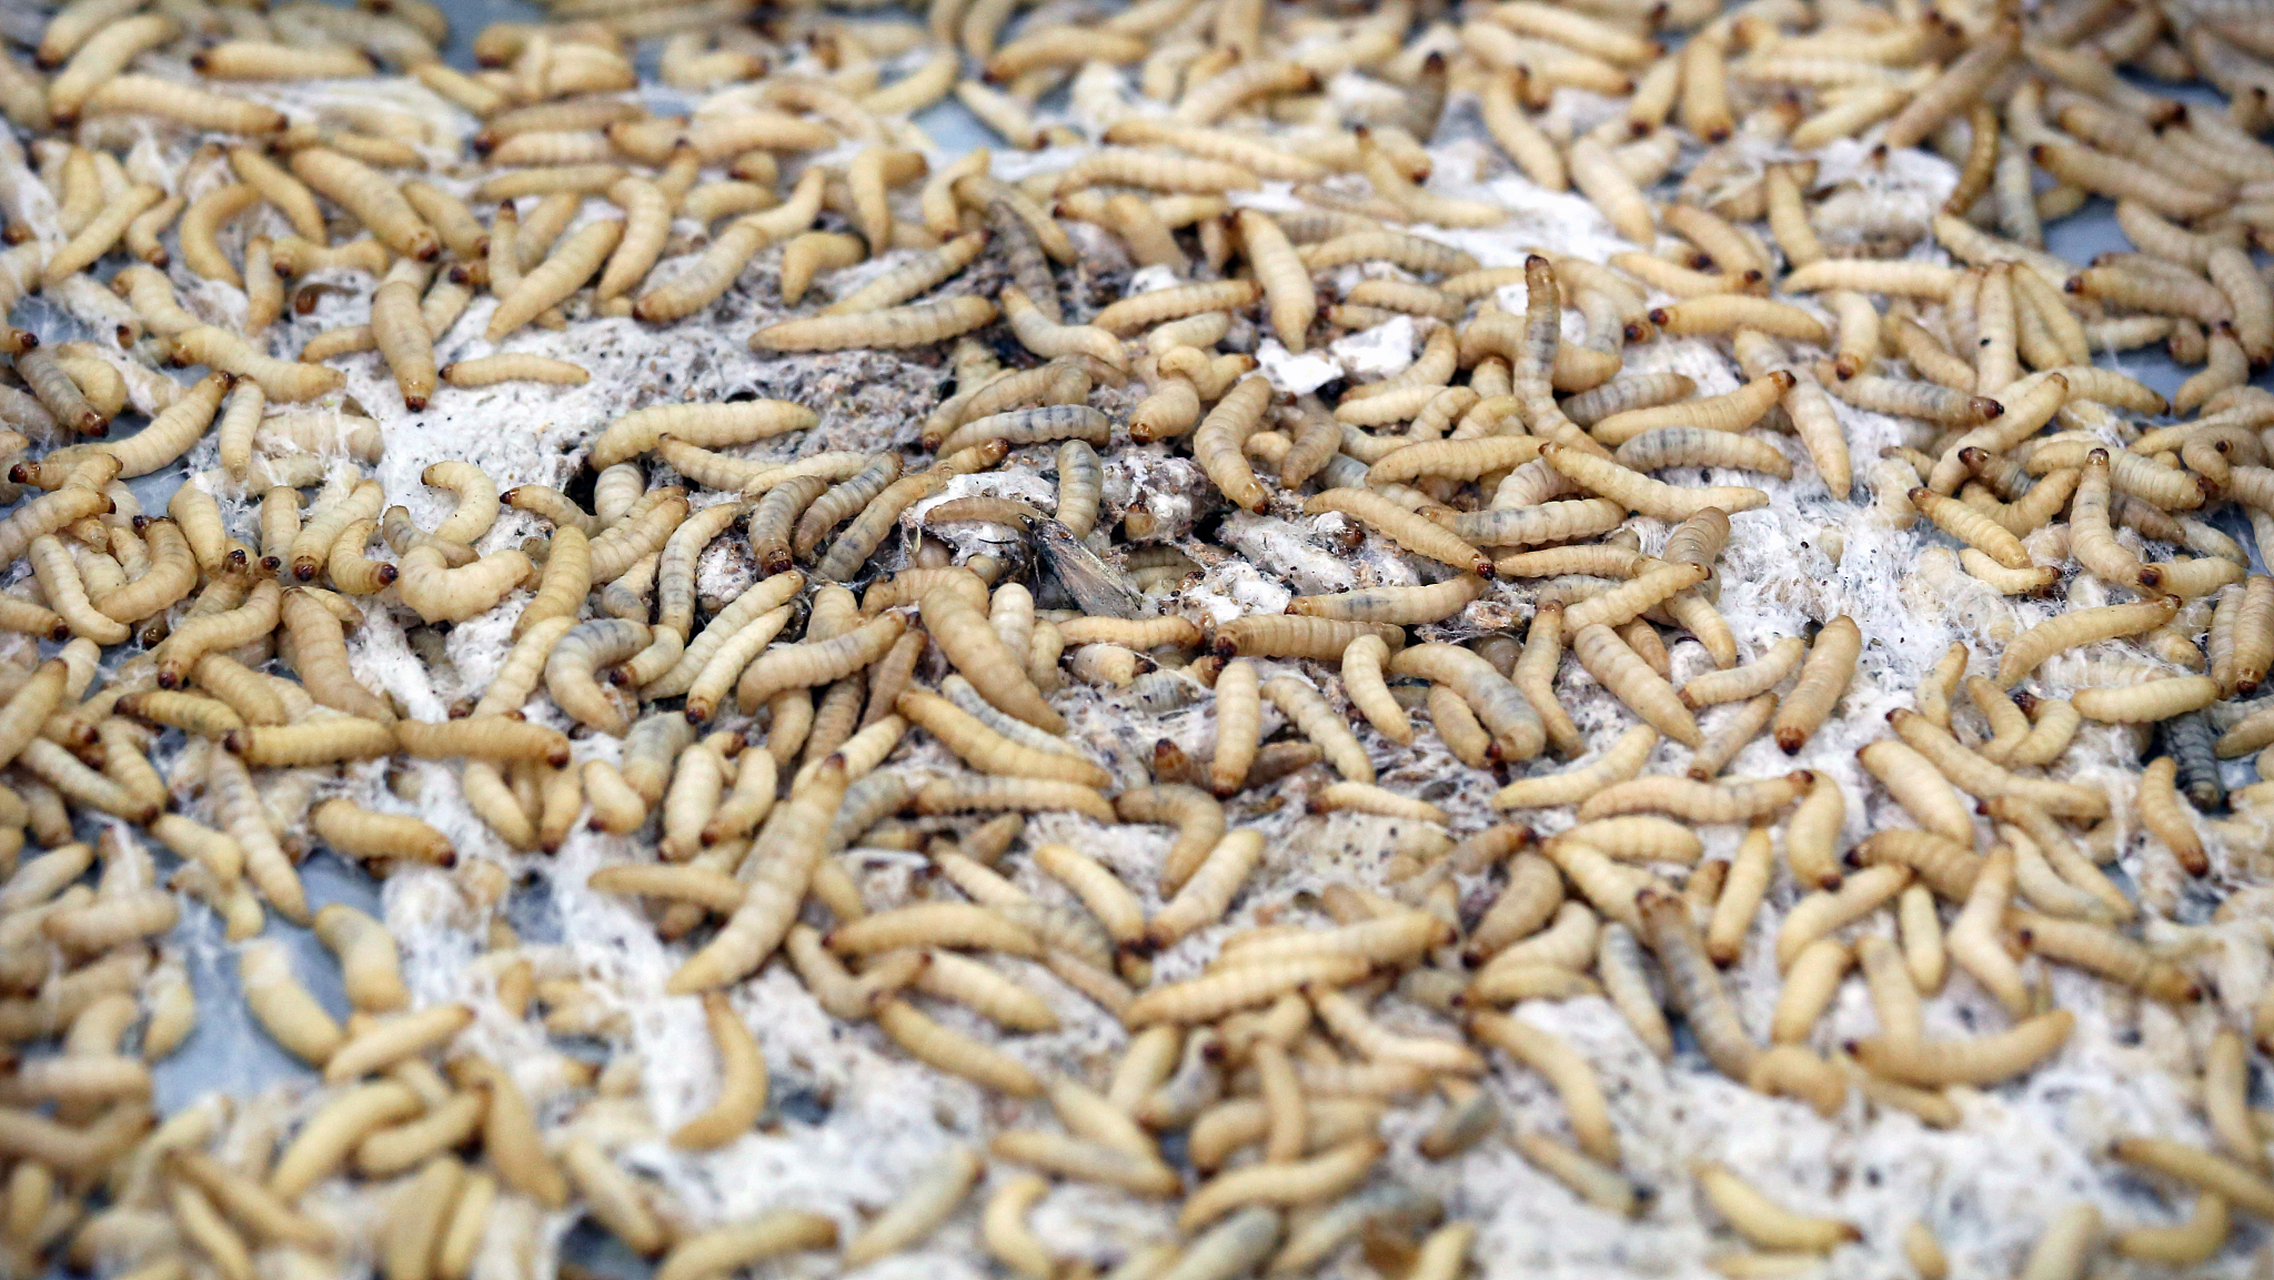 大麦虫的容器: 大麦虫通常在专门的容器中养殖,可以使用塑料容器或